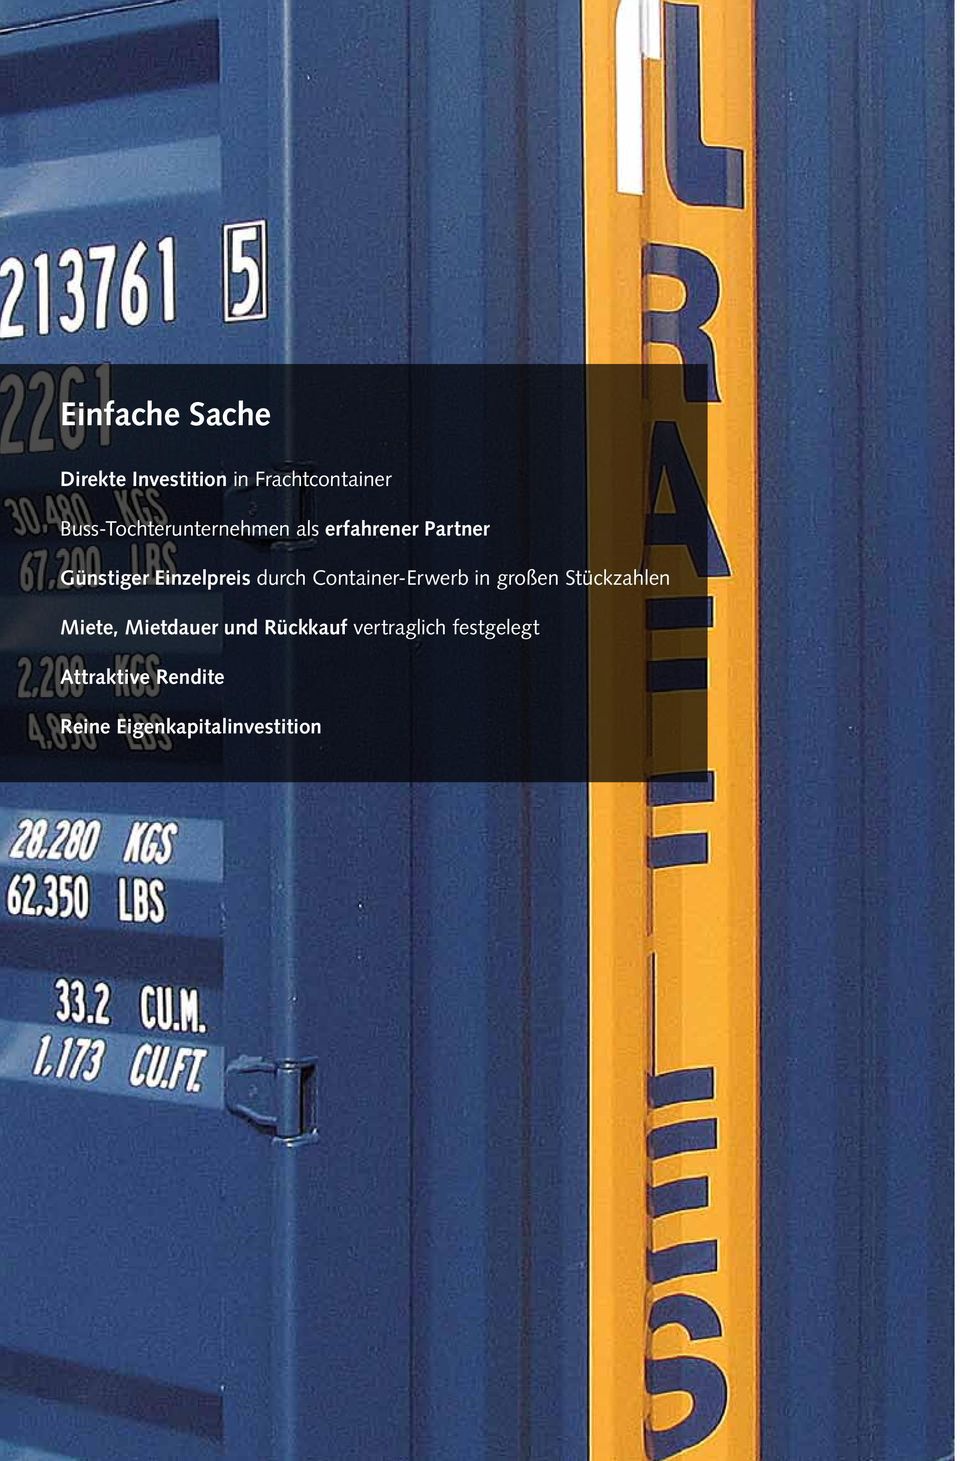 Container-Erwerb in großen Stückzahlen Miete, Mietdauer und Rückkauf